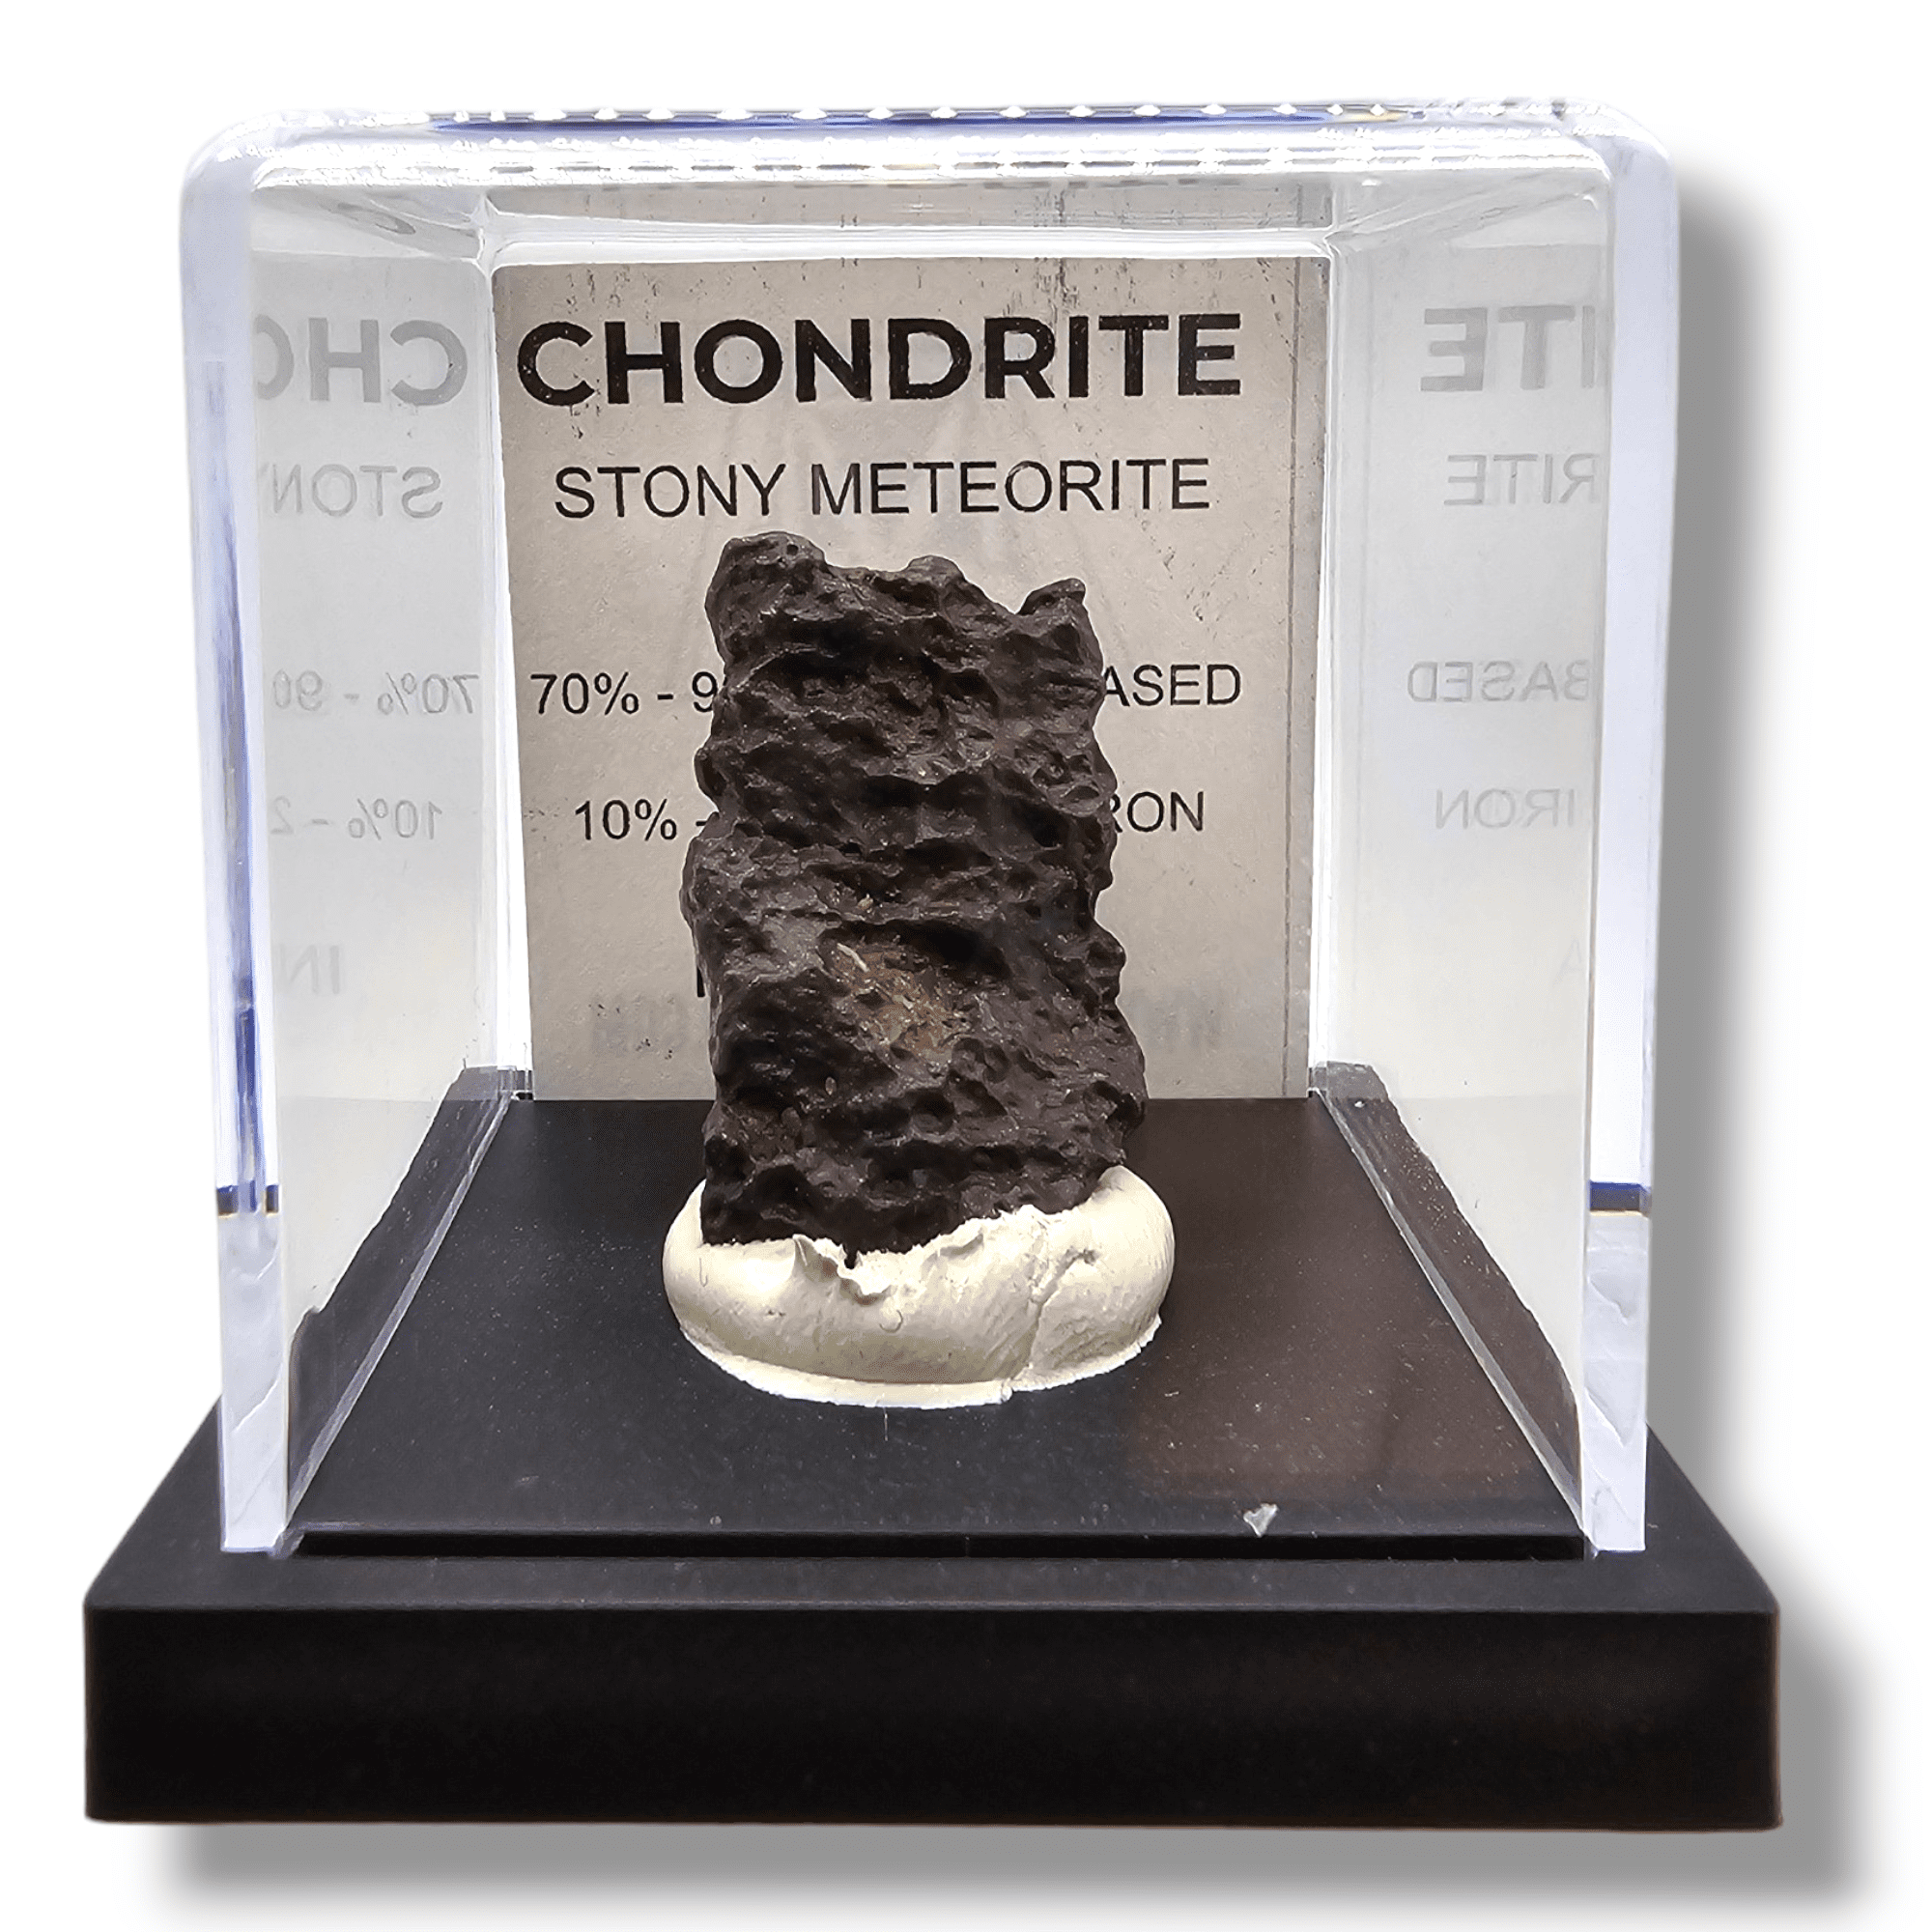 インドネシア産コンドライト隕石 - コレクターの石質隕石